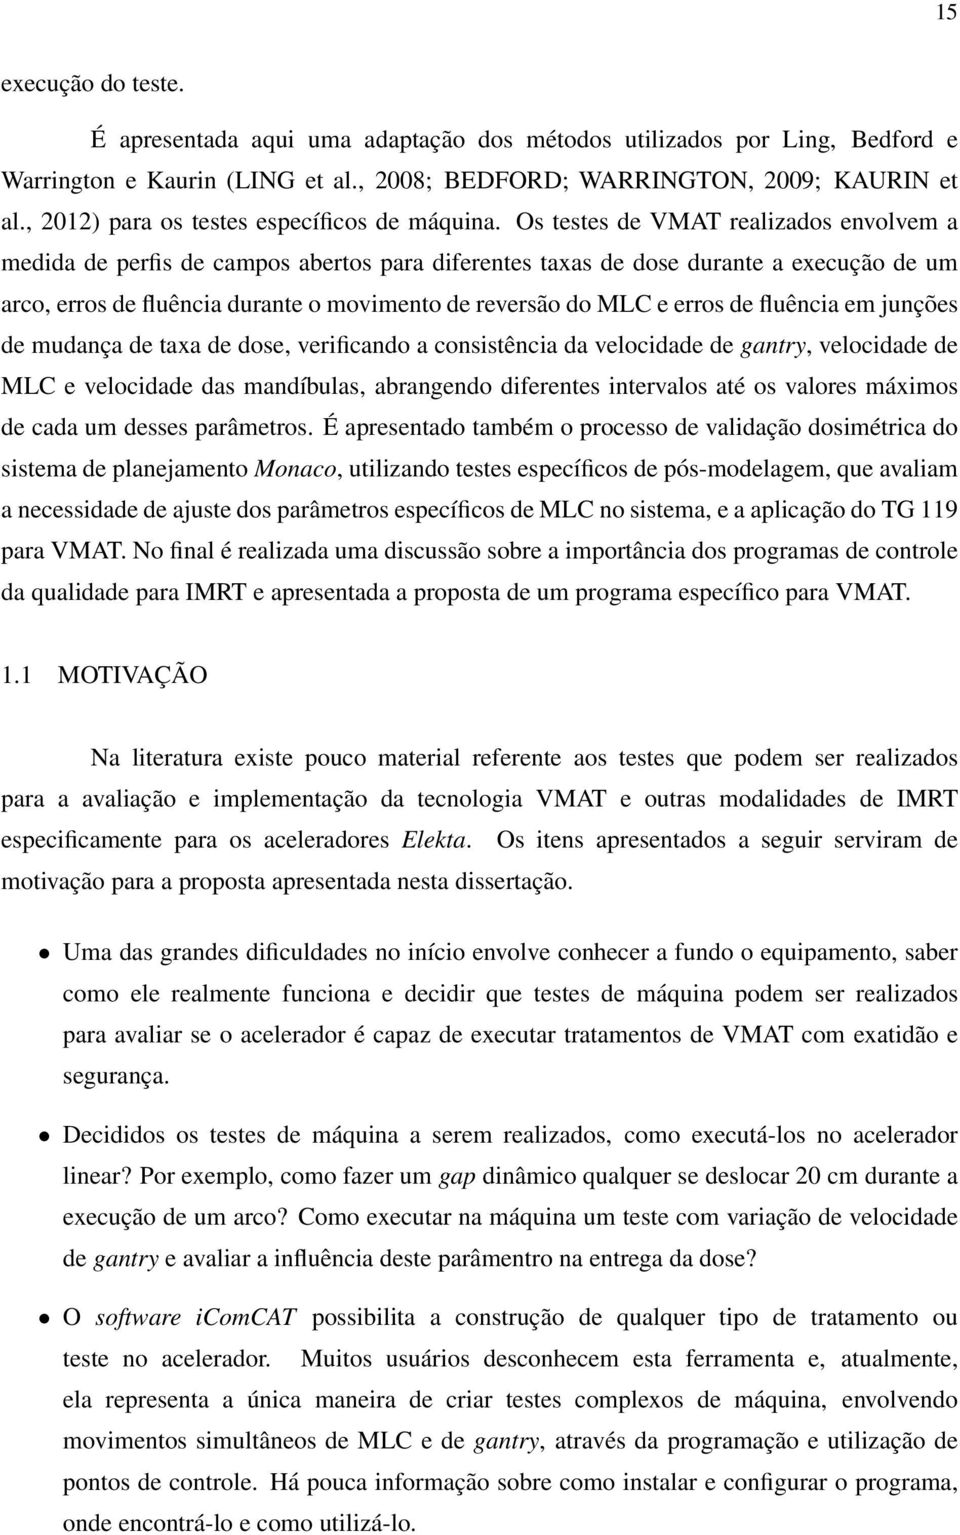 Os testes de VMAT realizados envolvem a medida de perfis de campos abertos para diferentes taxas de dose durante a execução de um arco, erros de fluência durante o movimento de reversão do MLC e